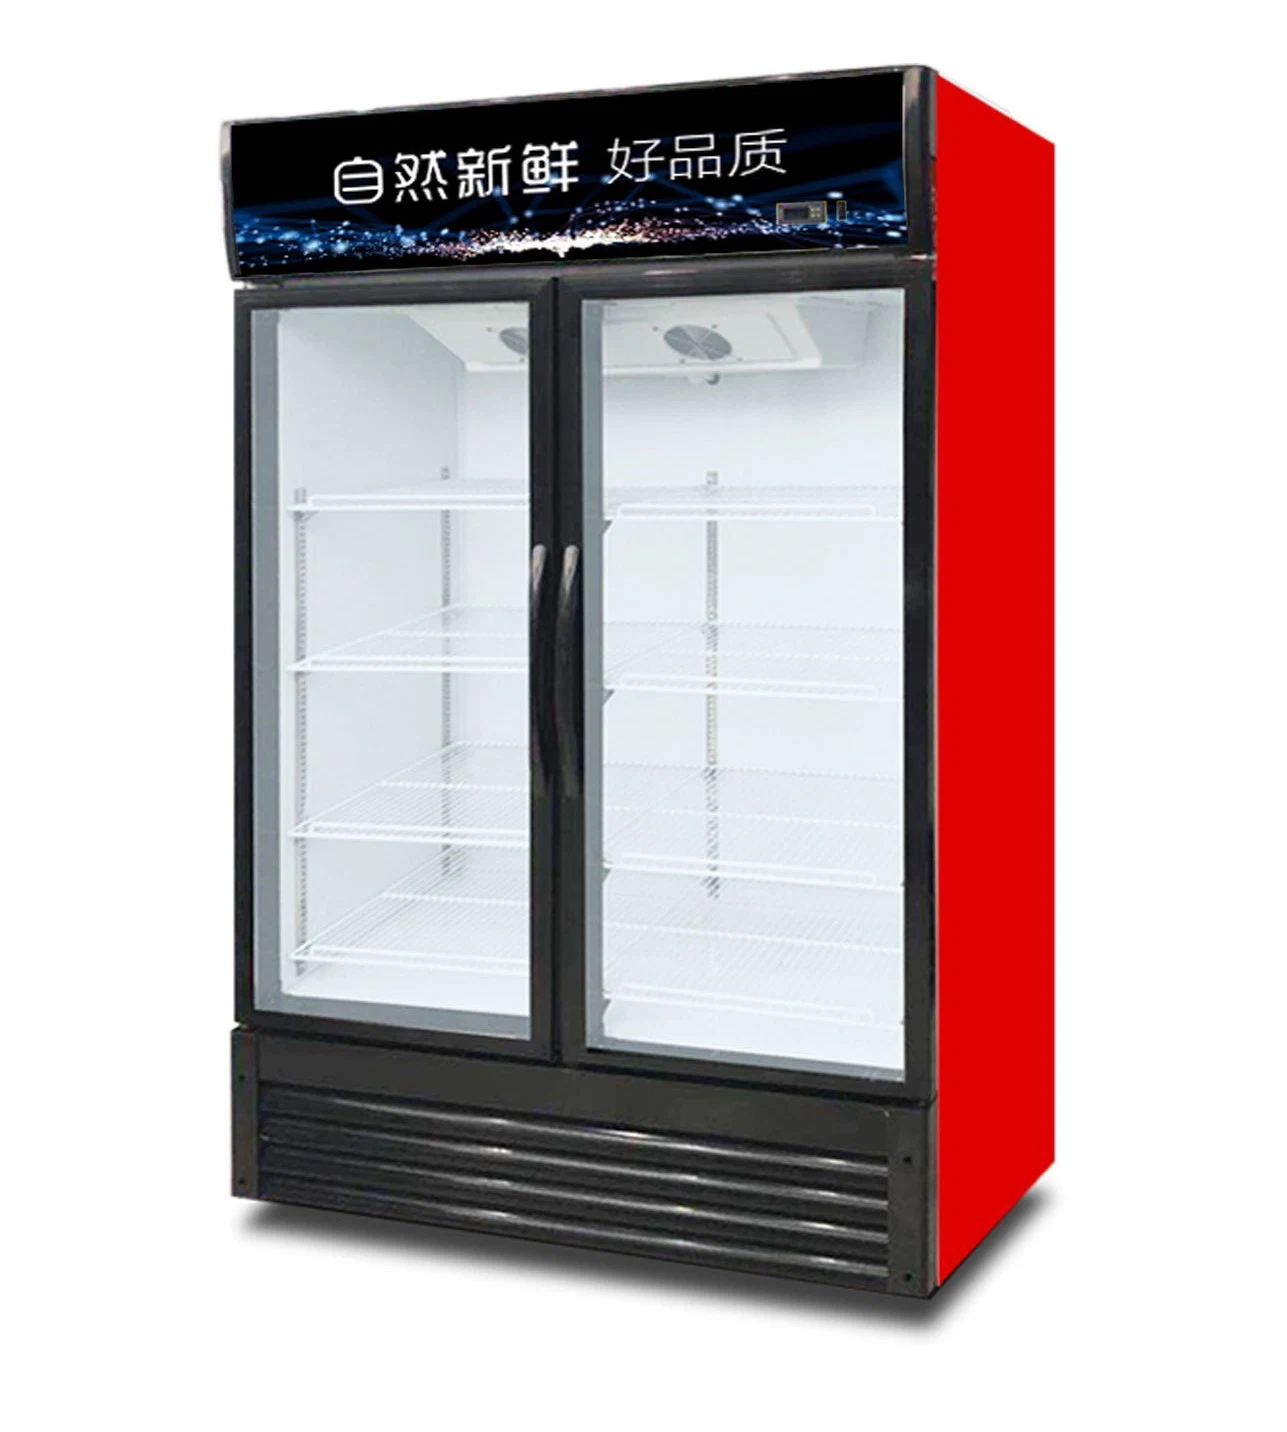 C Jinbest стеклянные двери холодильник дисплей холодильники холодильники охладителя дисплея